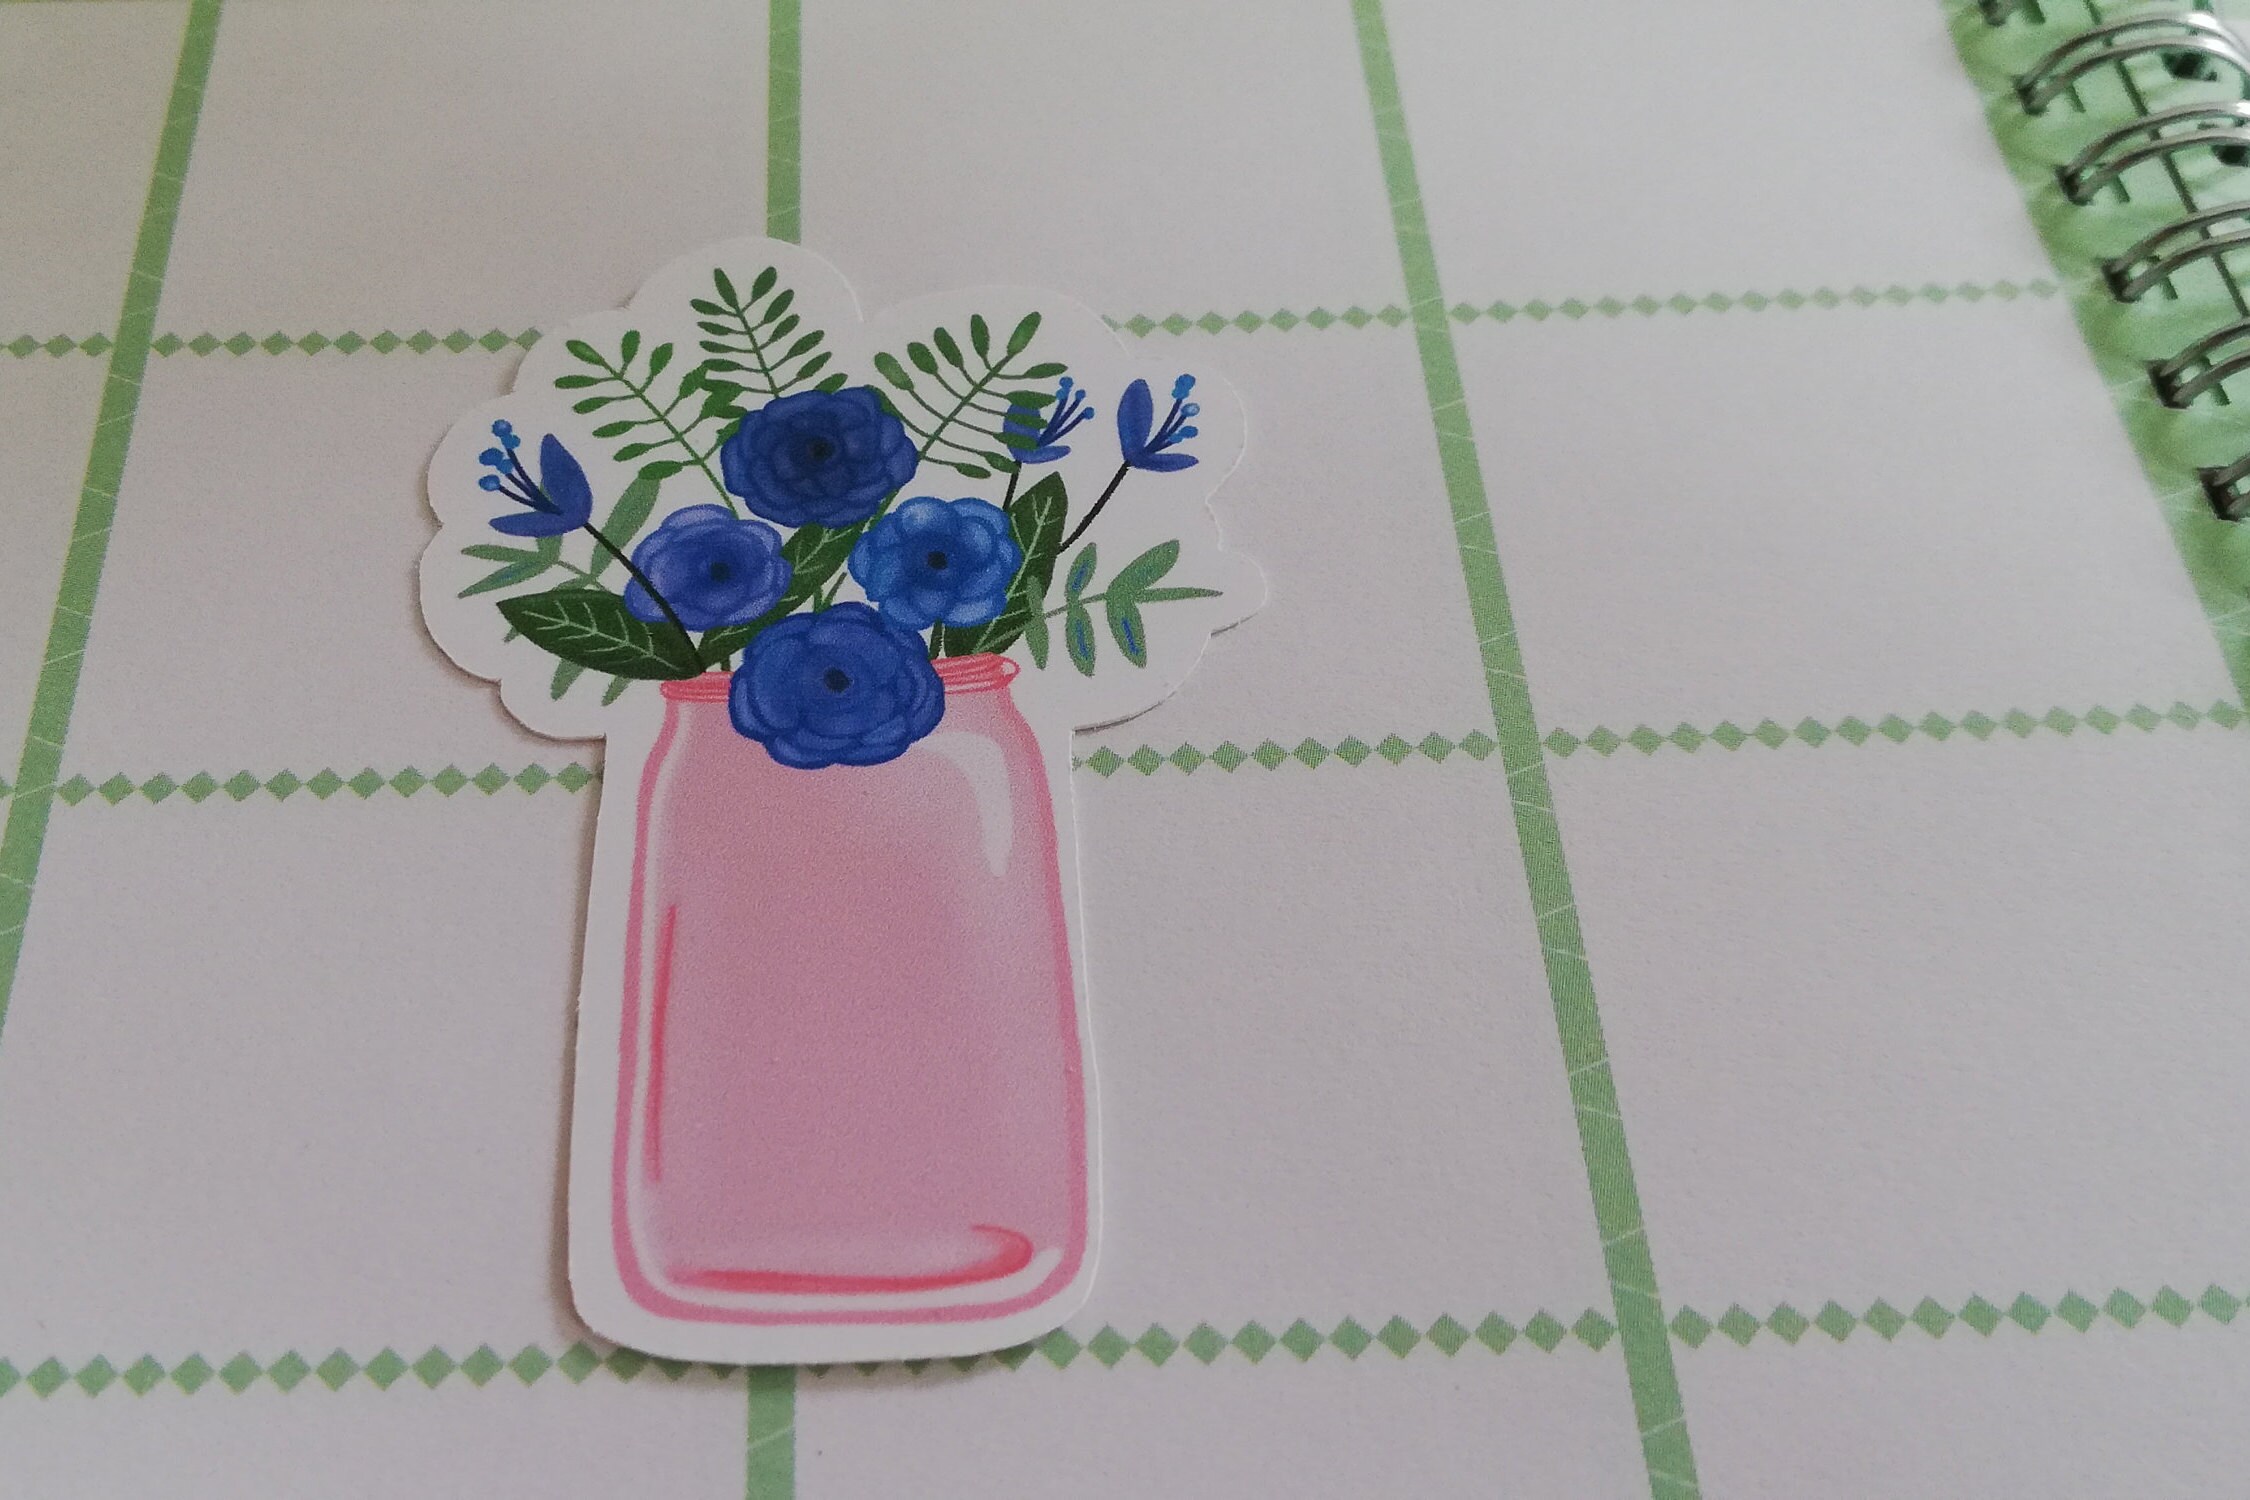 Sticker de Vinilo Flores Vintage 1 pegatina flores azules